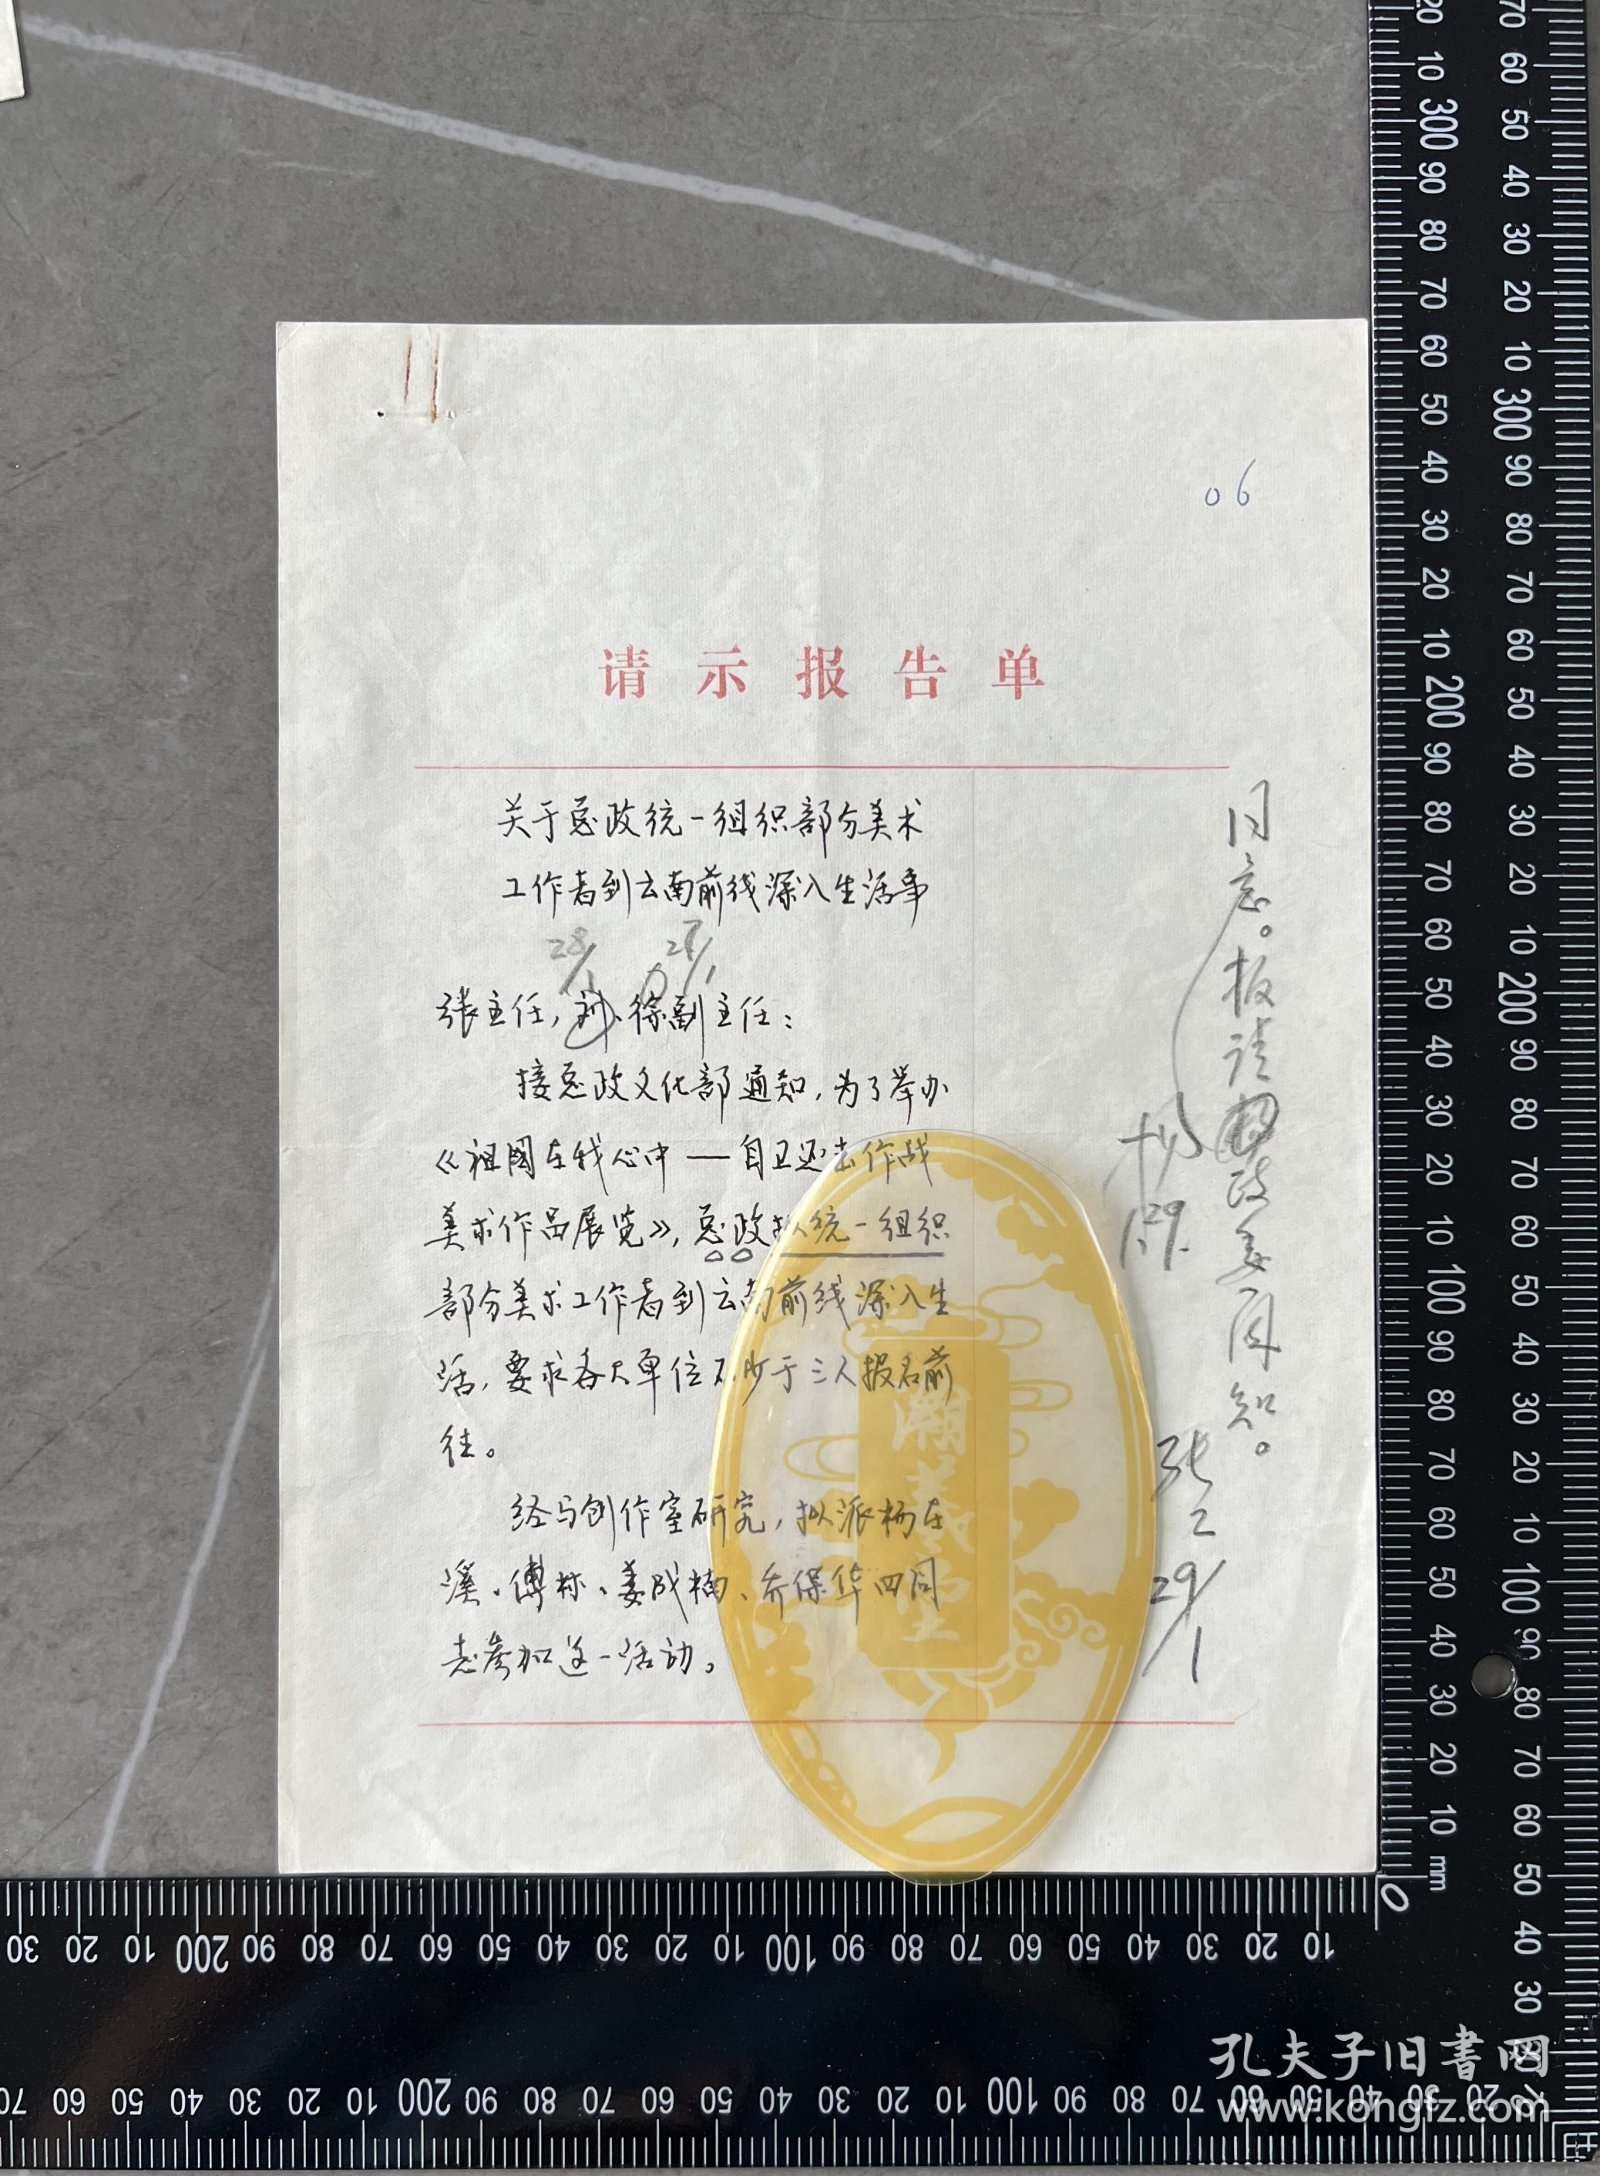 北京军区文化部秘书 刘元福 签名信札1通2页 ，含杨-白-冰、张工、徐-寿-增 等签批